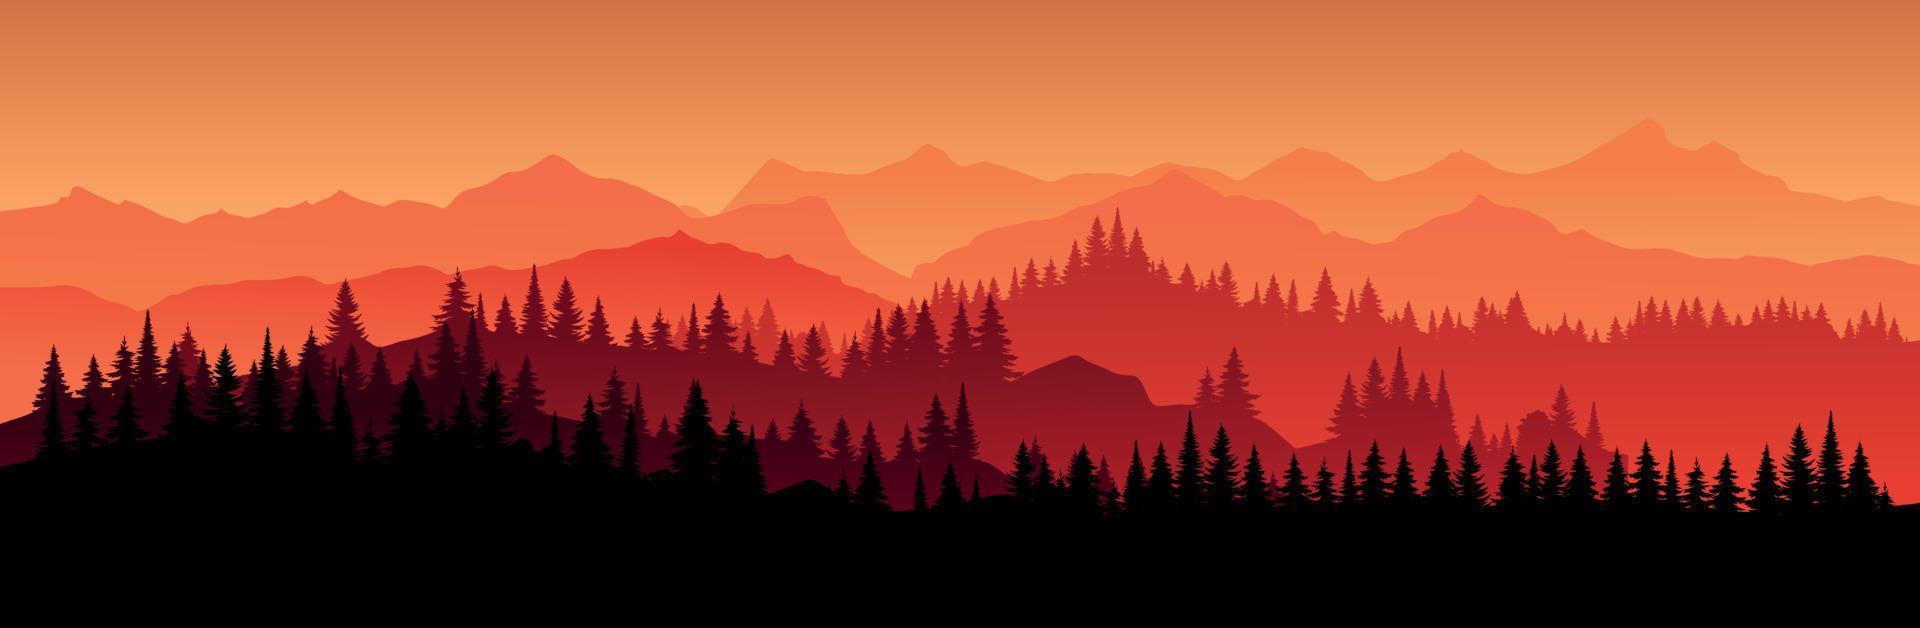 vector rood horizontaal landschap met mist, bos kerstboom, sparren, sparren en ochtendzon. illustratie van panoramisch uitzicht silhouet, mist en silhouetten bergen. vuur in het bos.